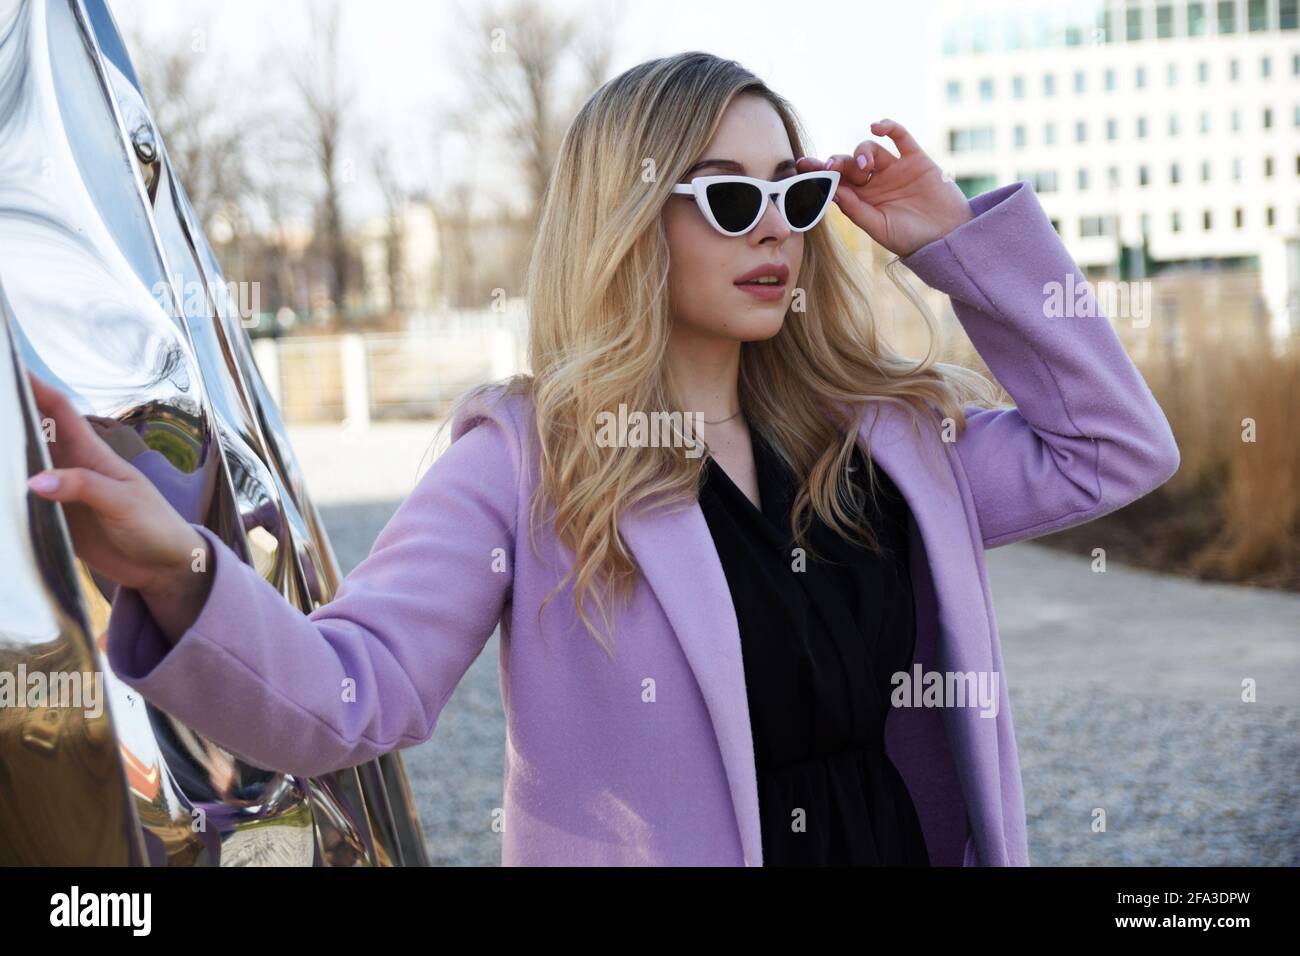 Junge Frau in Breslau. Studentin mit blonden Haaren, violettem Mantel und Sonnenbrille. Stockfoto